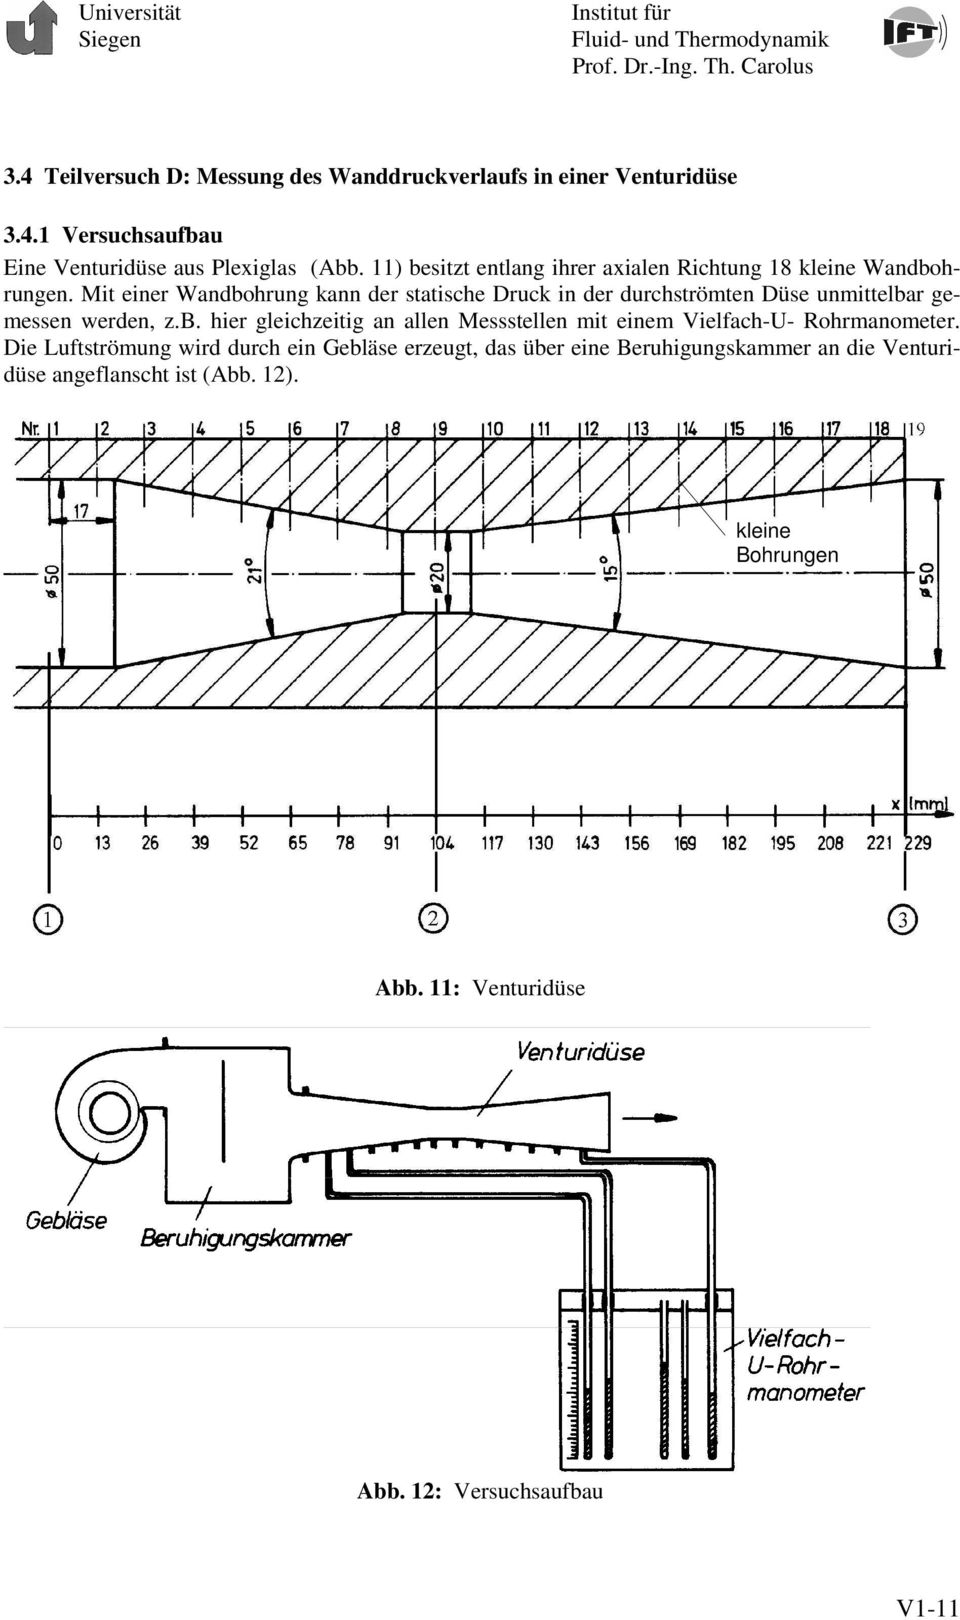 Mit einer Wandbohrung kann der statische Druck in der durchströmten Düse unmittelbar gemessen werden, z.b. hier gleichzeitig an allen Messstellen mit einem Vielfach-U- Rohrmanometer.